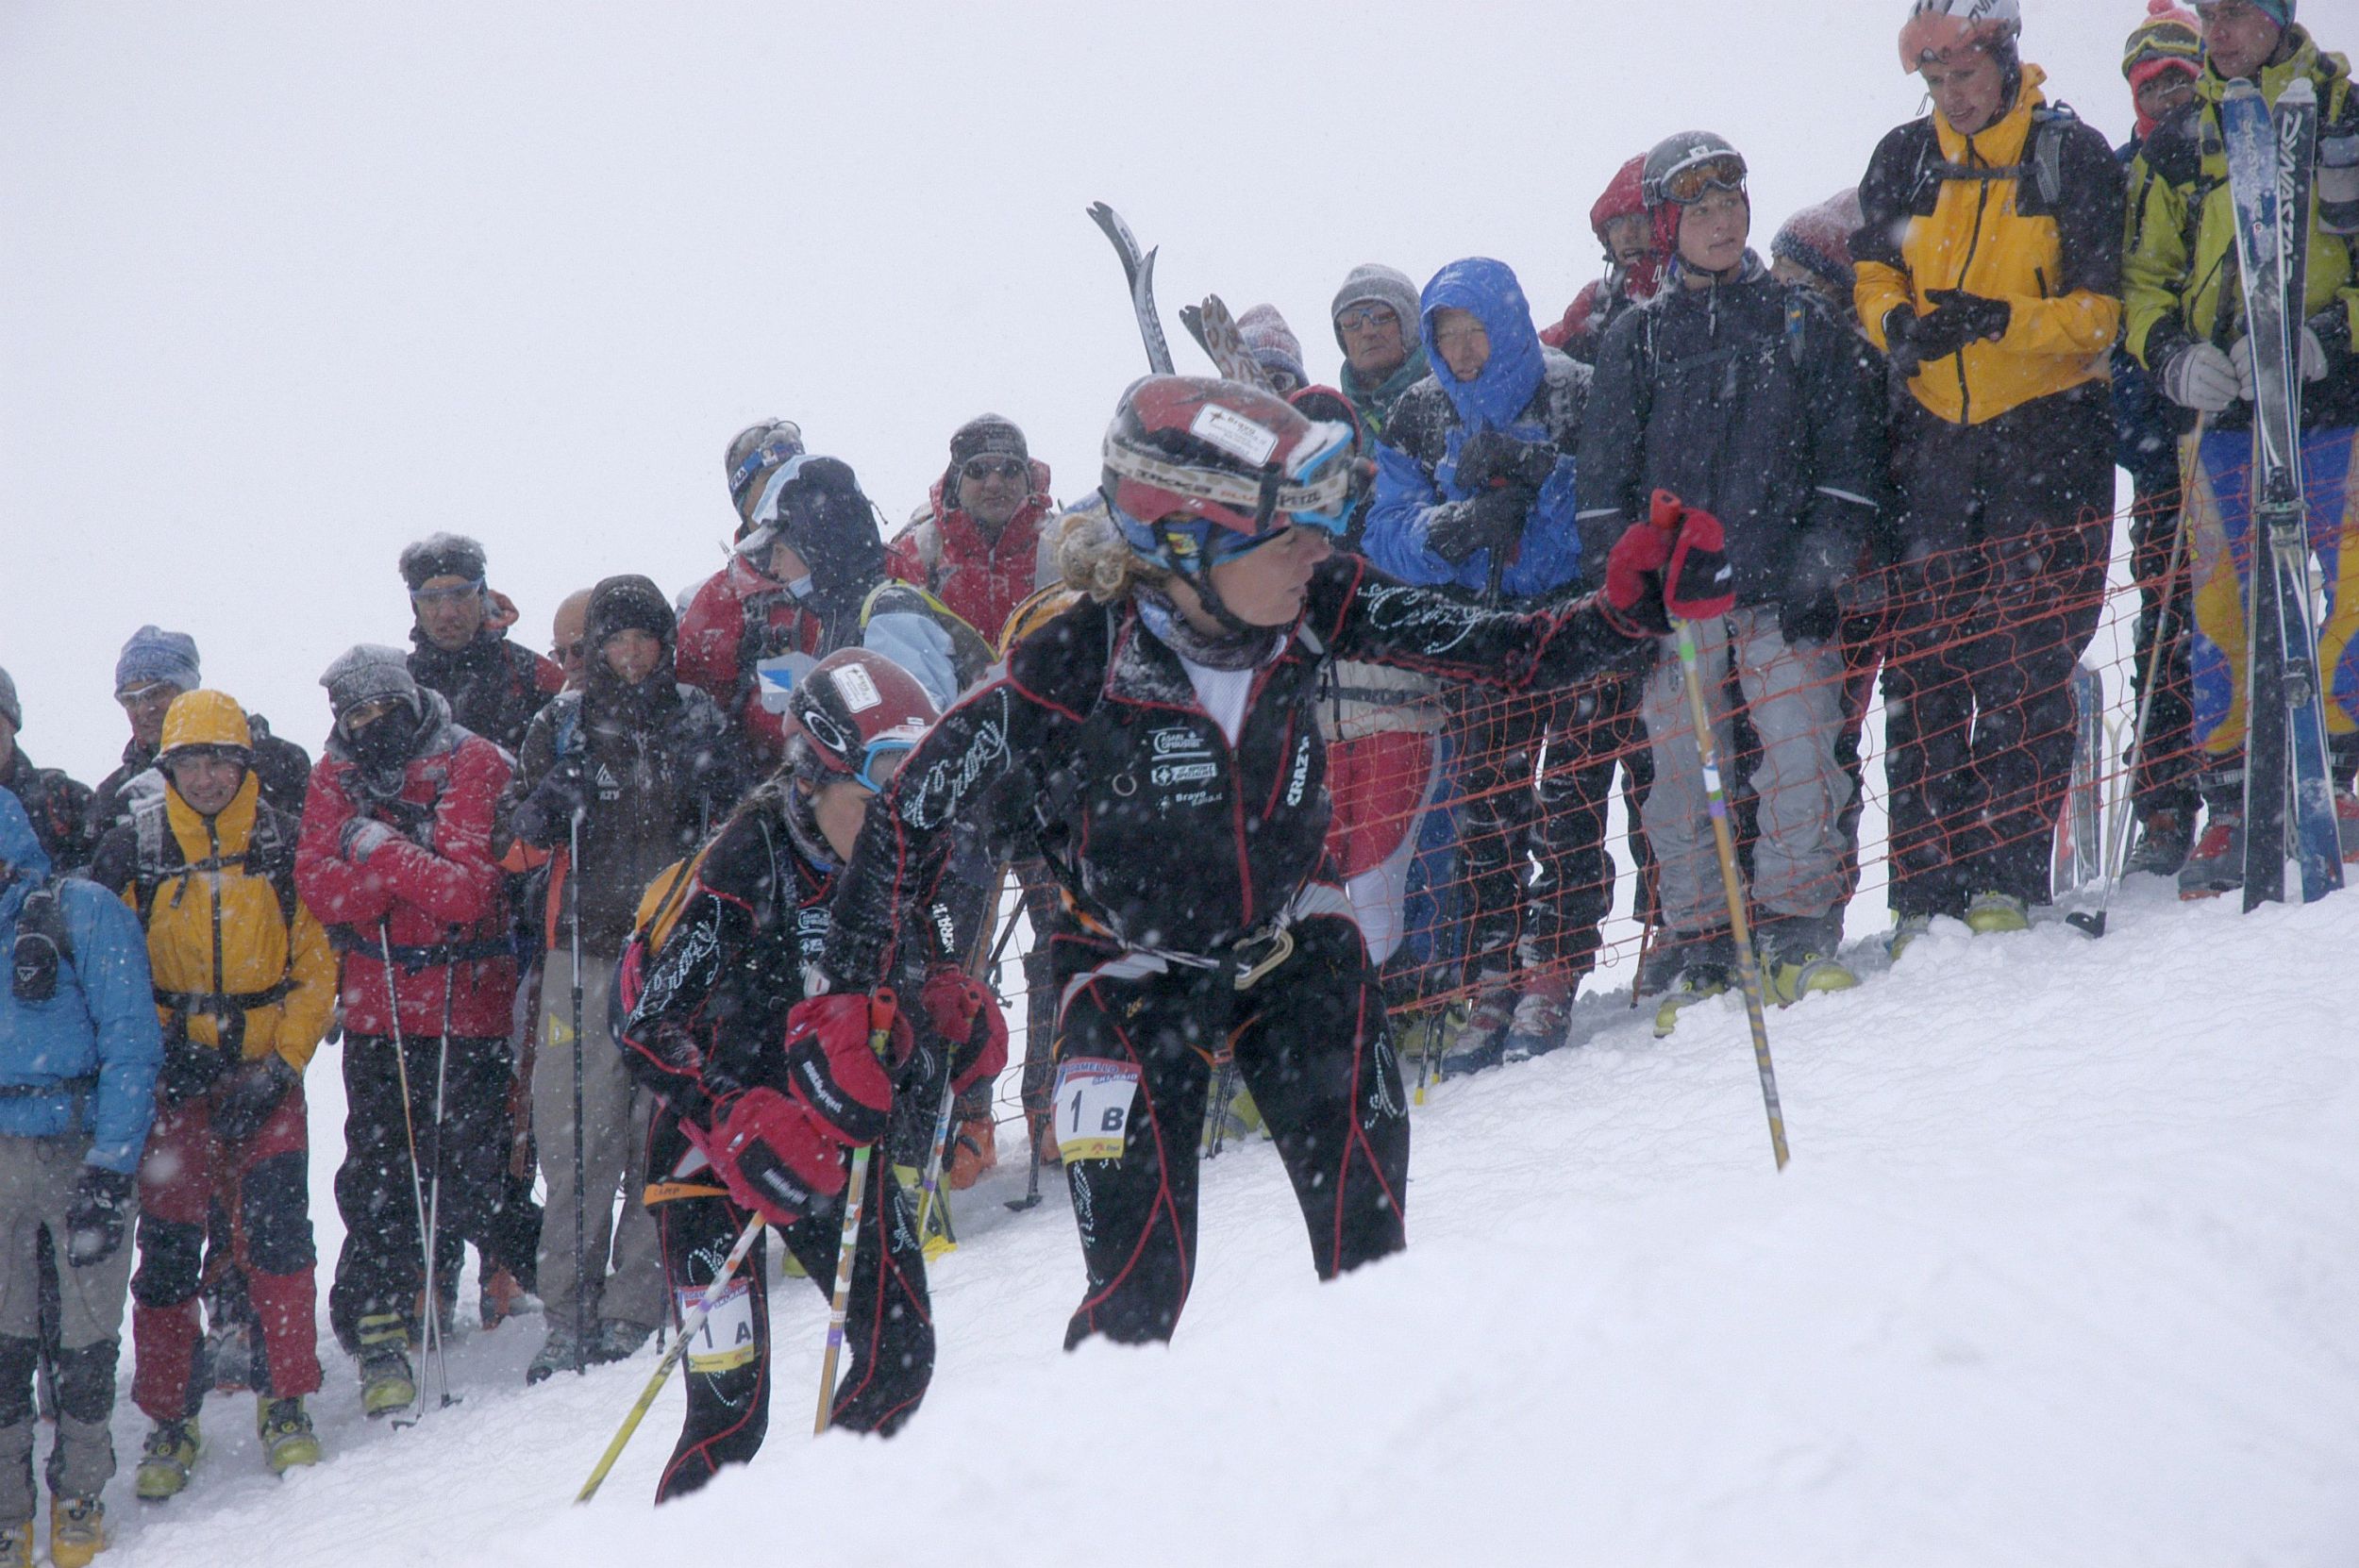 Adamello Ski Raid 2011: 600 in gara con i campioni mondiali di scialpinismo